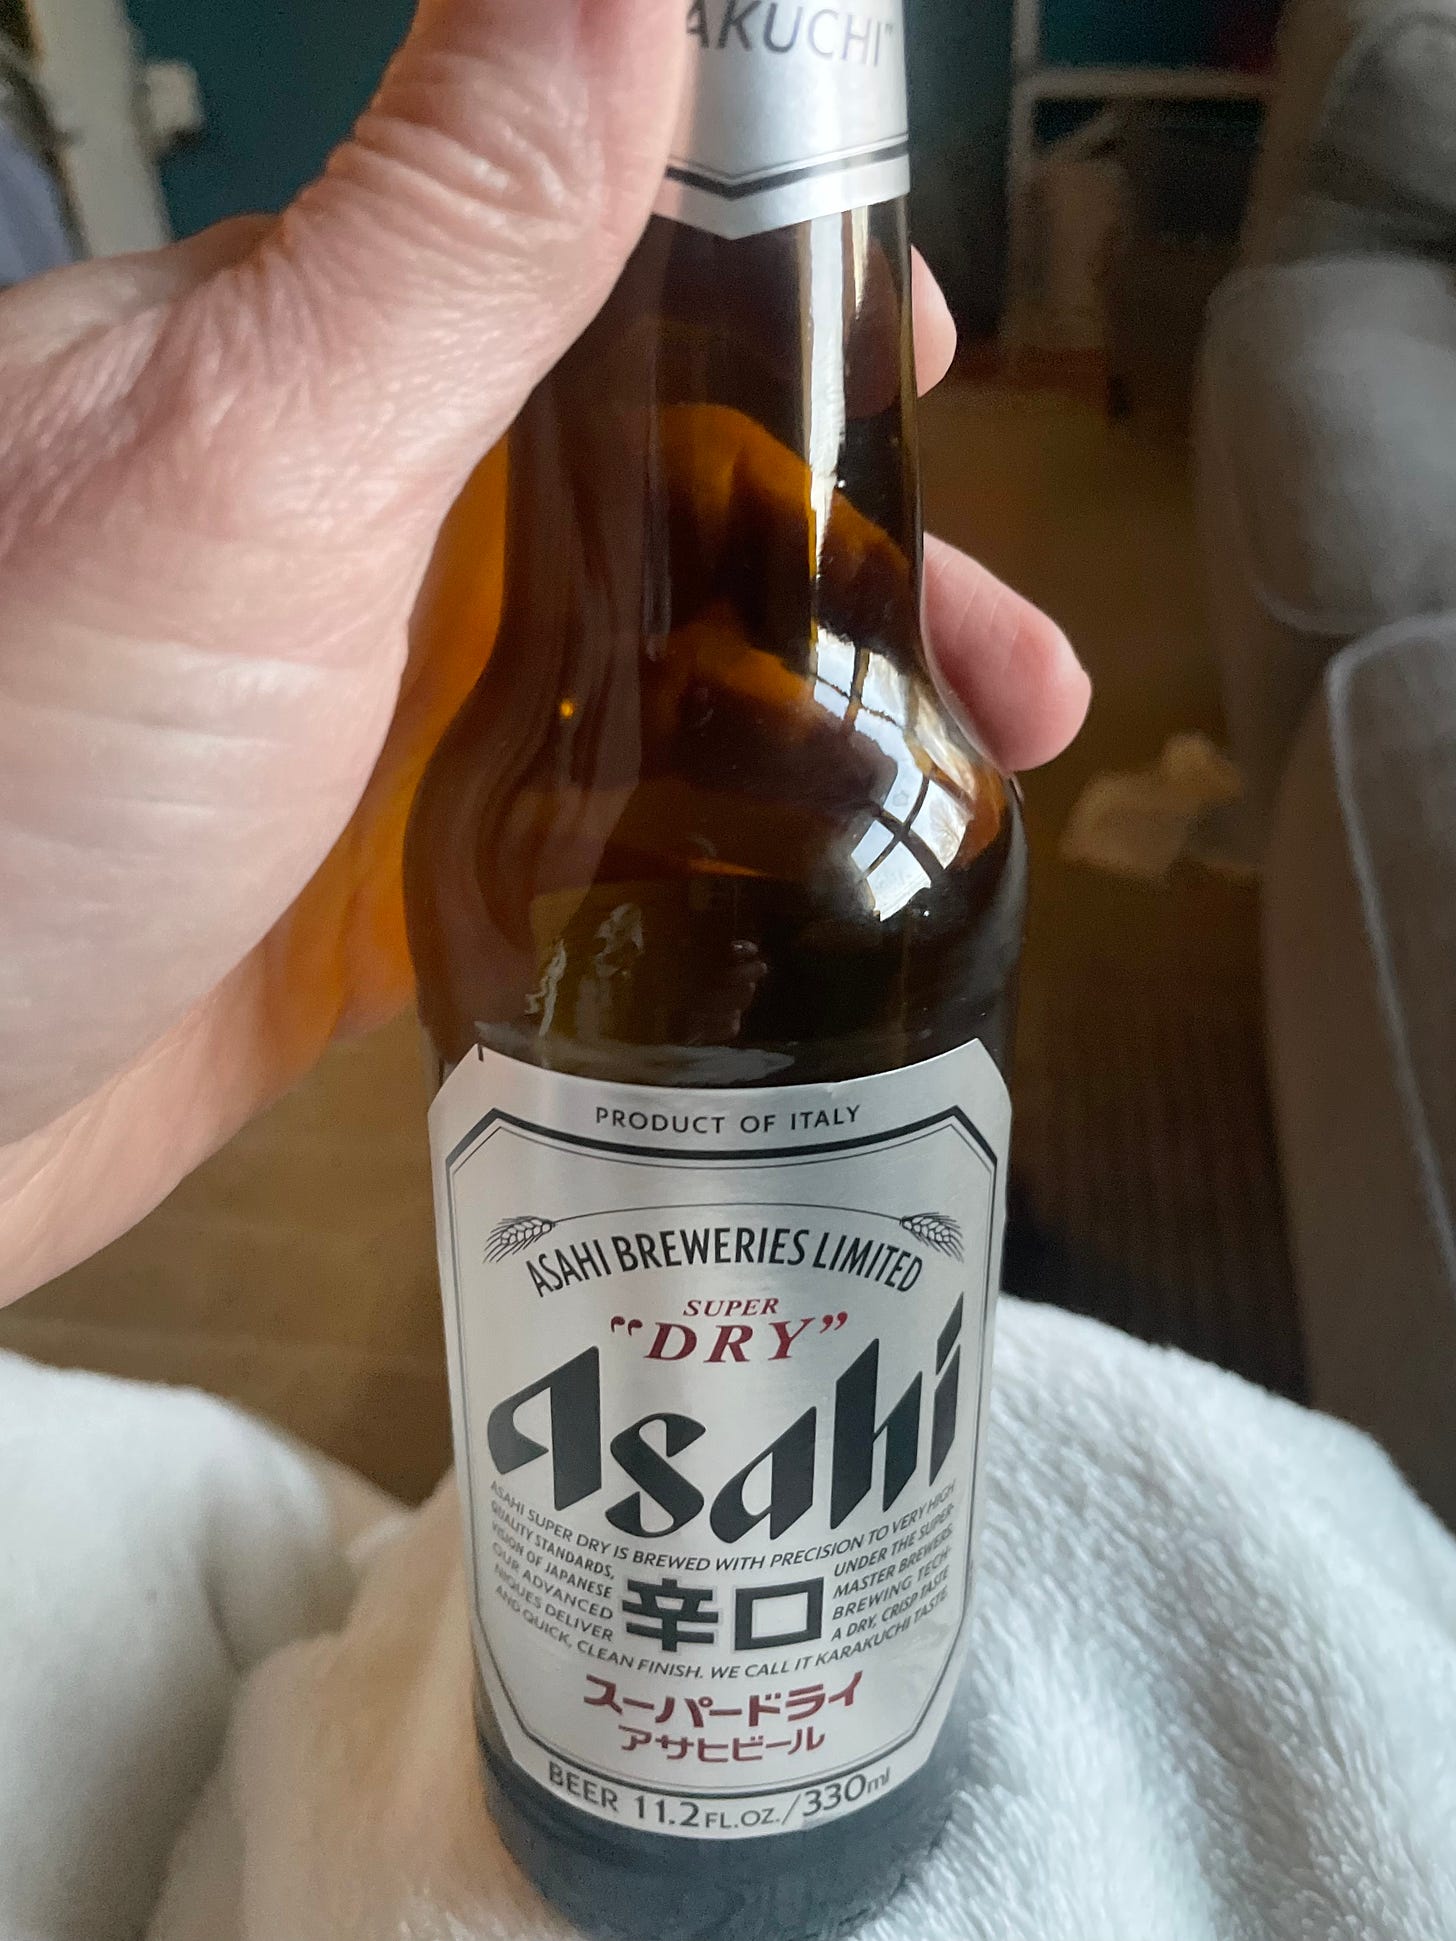 Close-up shot of Asahi Super Dry beer bottle.